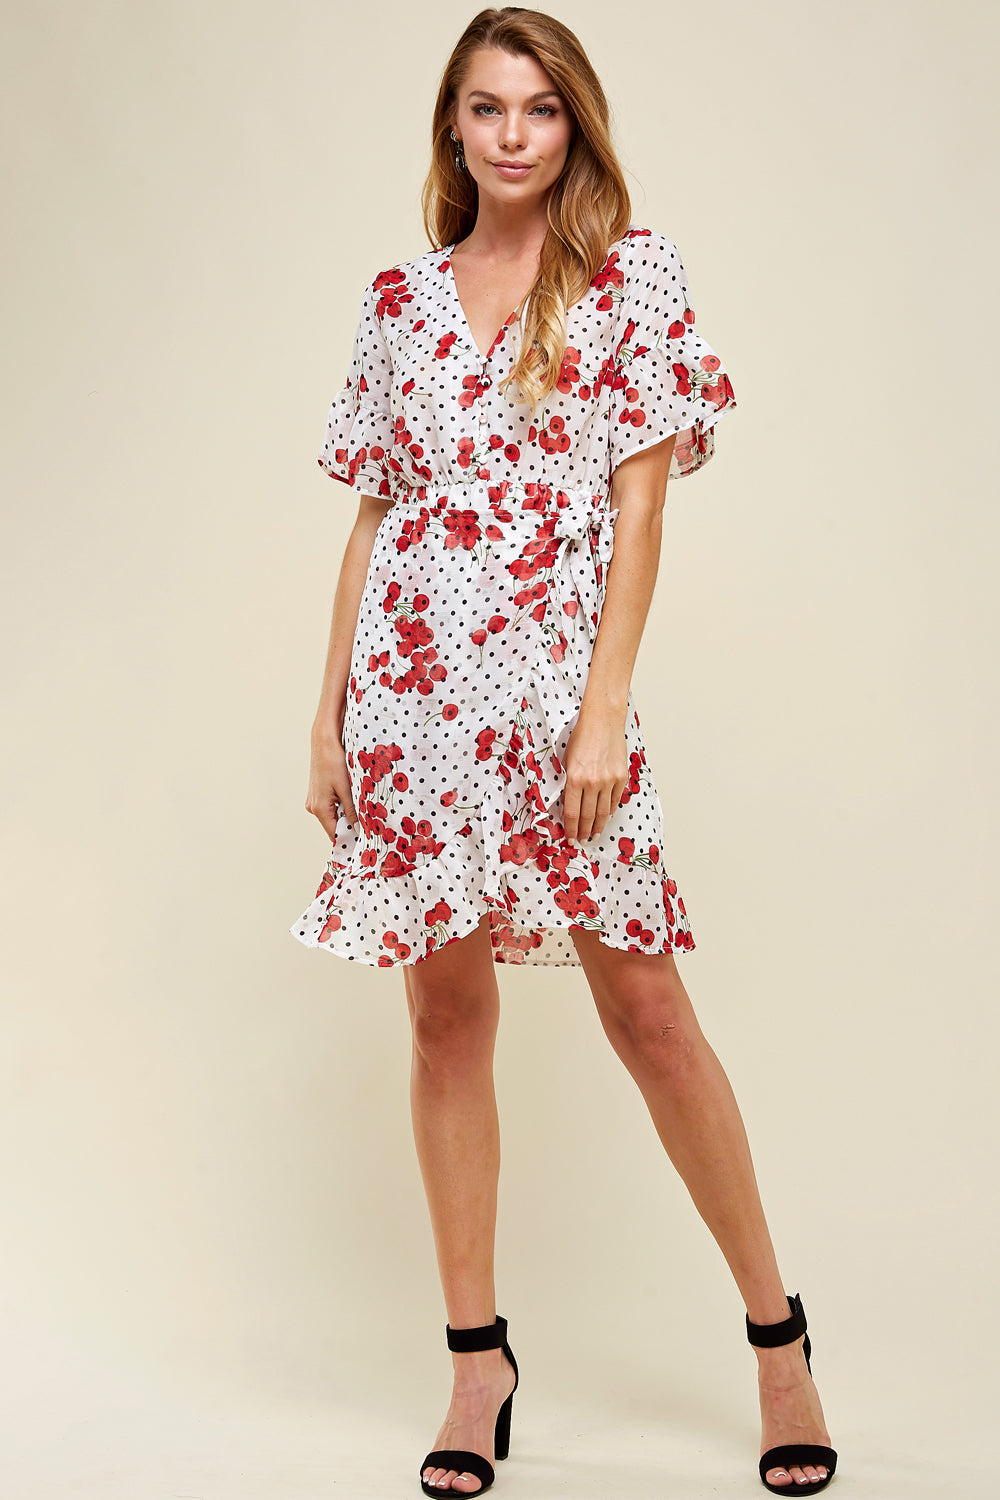 [$5/piece] Printed Ruffle Chiffon Dress